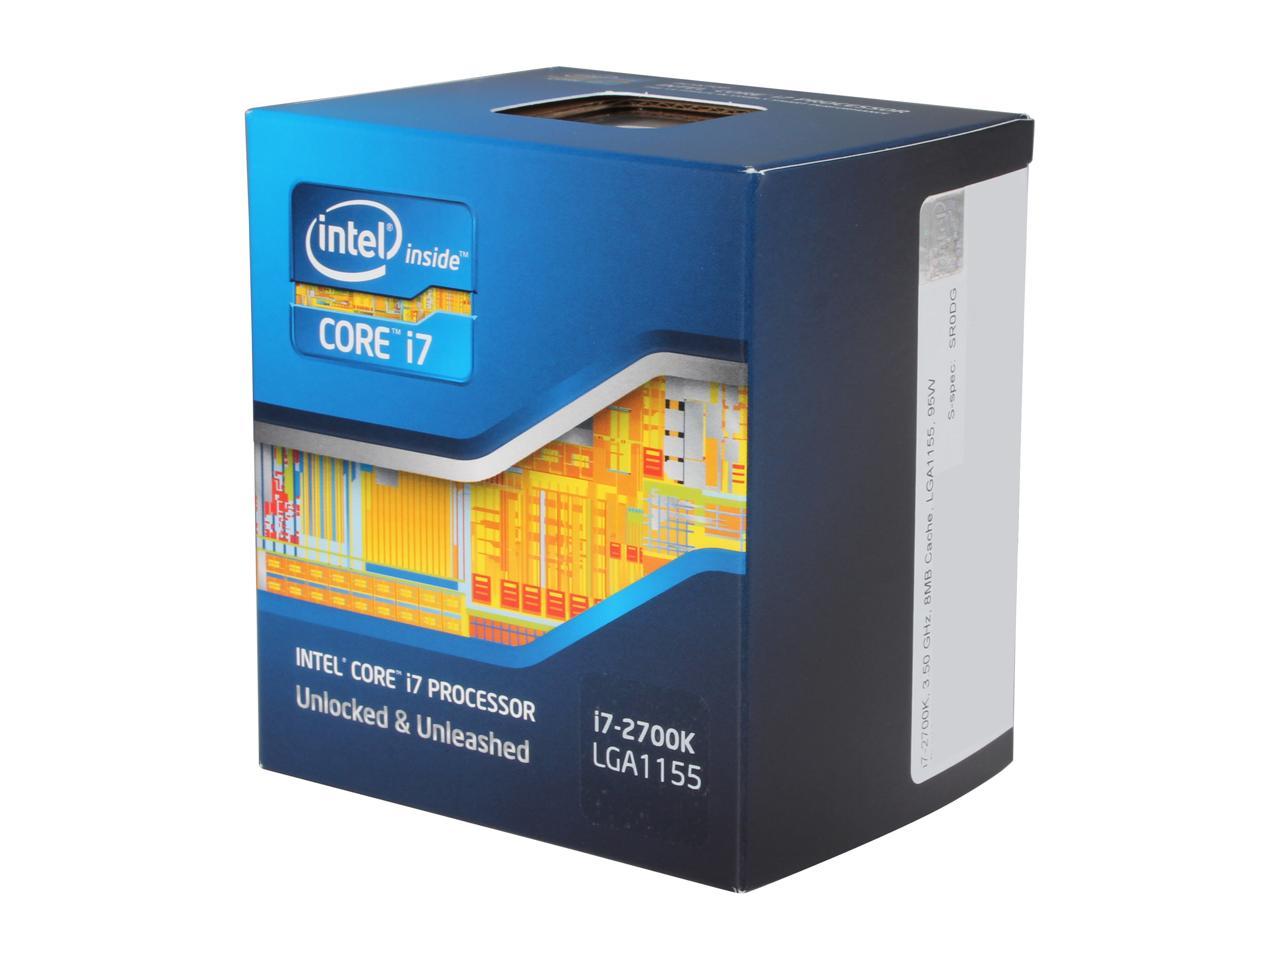 Интел 3570. Intel Core i5-3570k Ivy Bridge lga1155, 4 x 3400 МГЦ. Процессор Intel Xeon e3-1270v2. Core i7 3770. Intel Core i5-2400s Sandy Bridge lga1155, 4 x 2500 МГЦ.